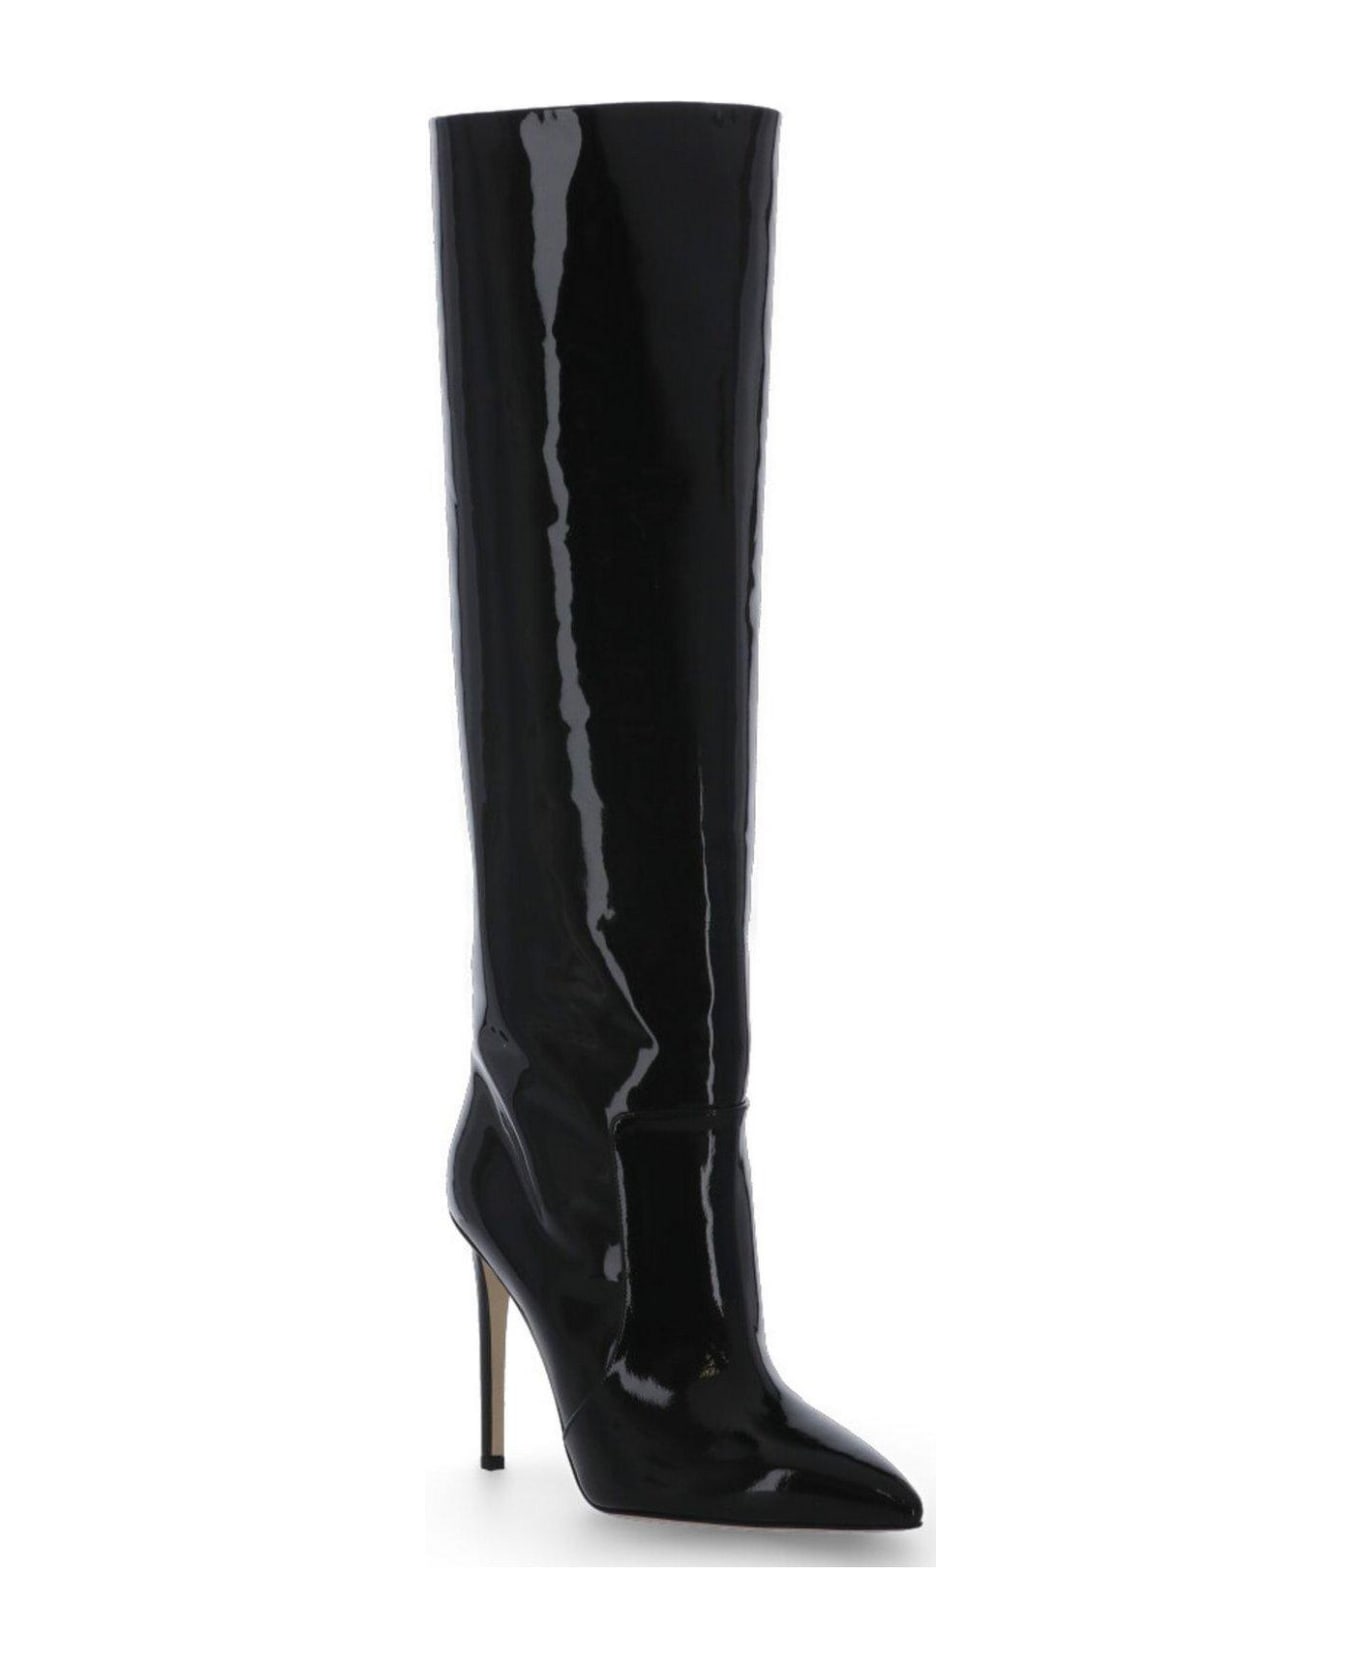 Paris Texas Stiletto Pointed Toe Boots - Nero